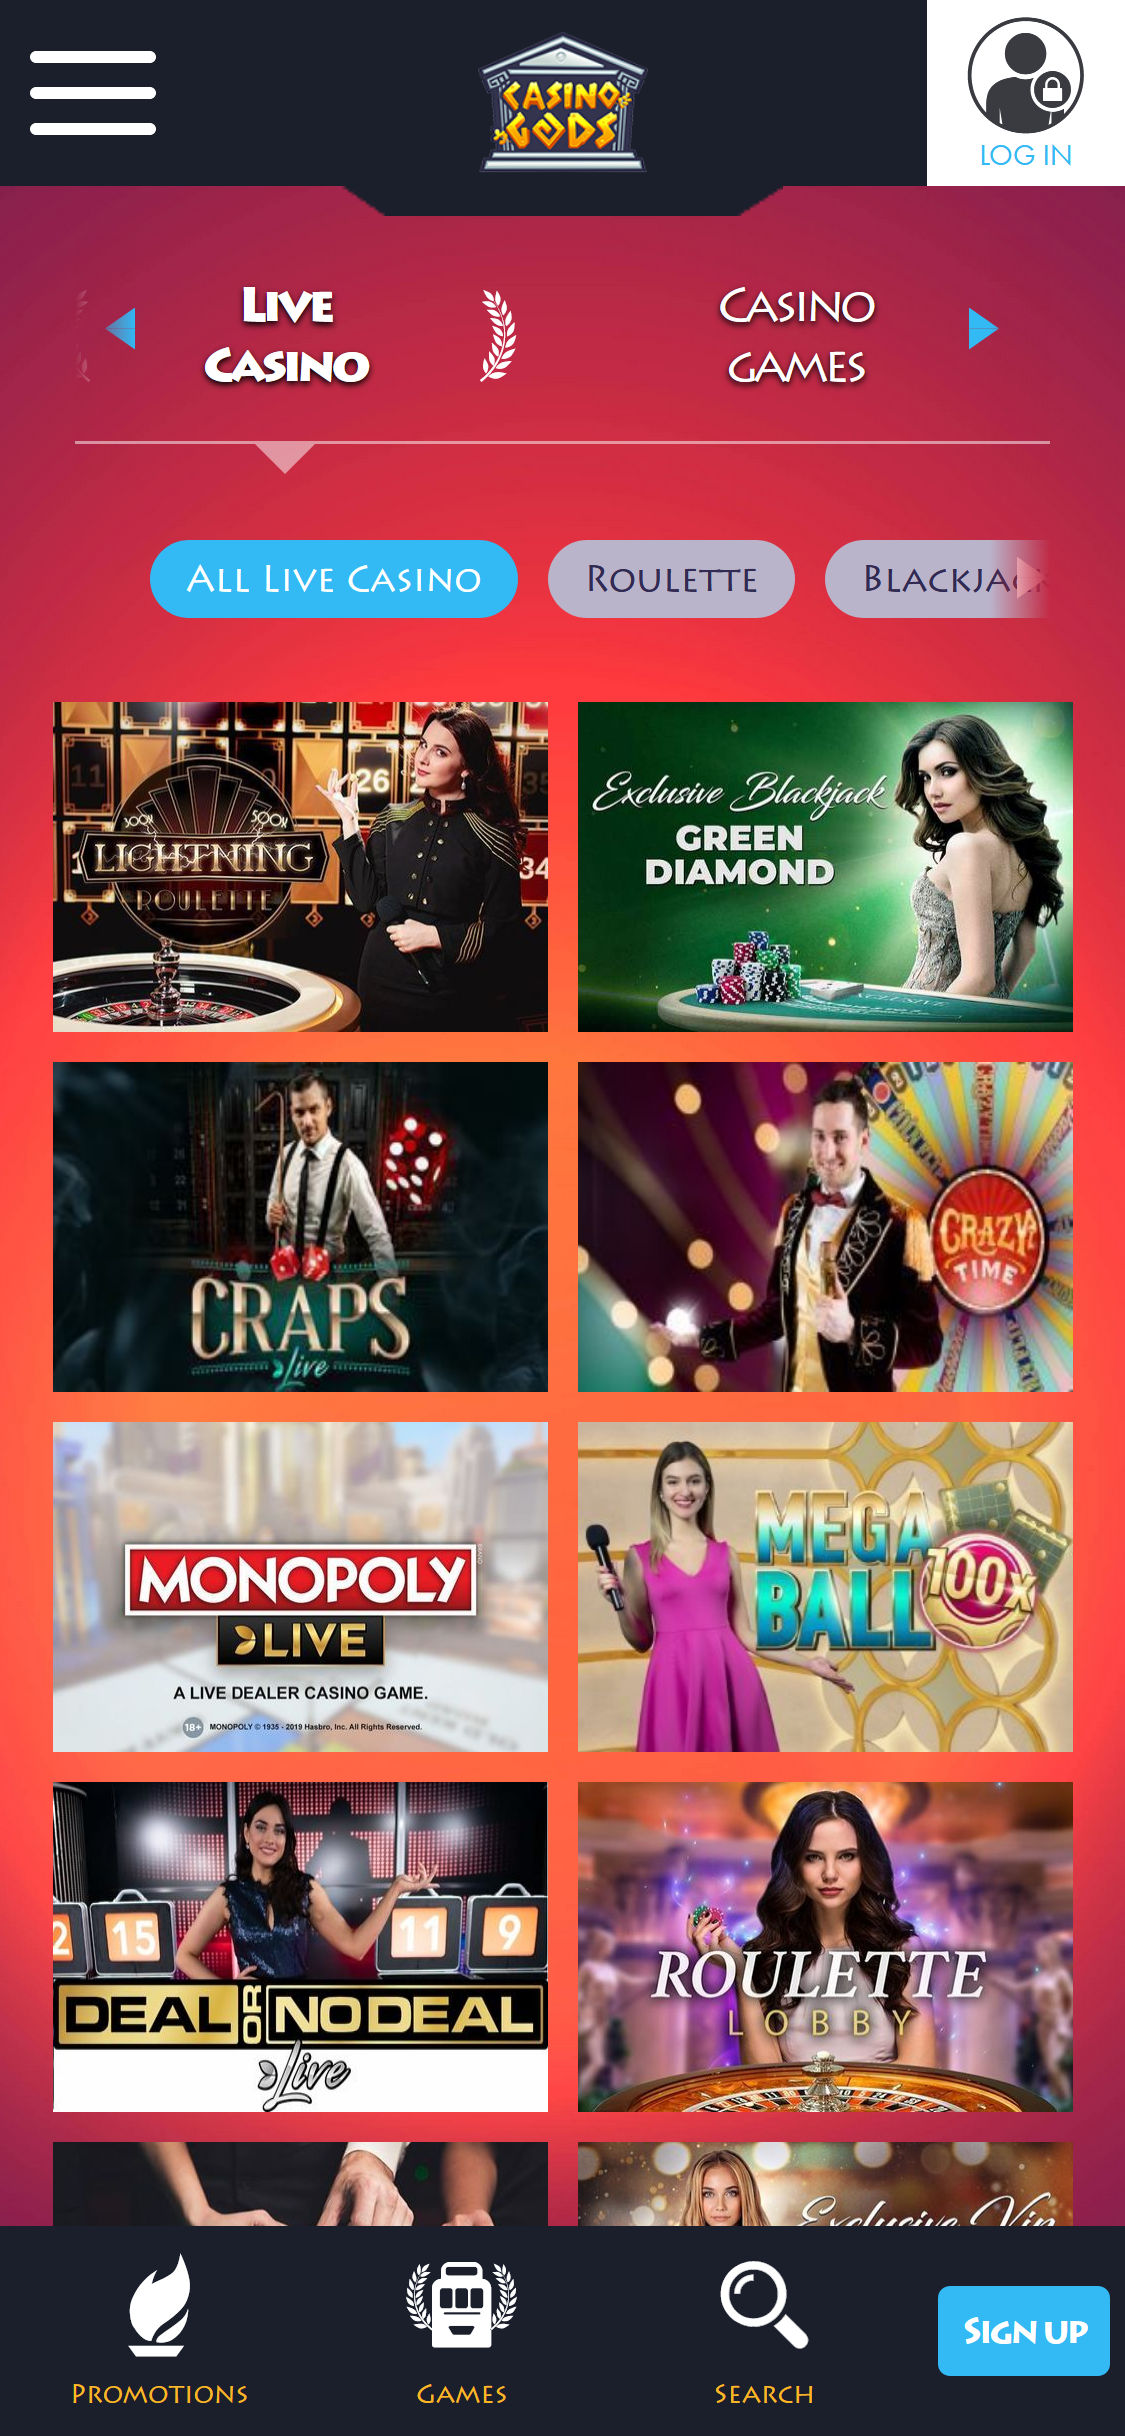 Casino Gods Mobile Live Dealer Games Review